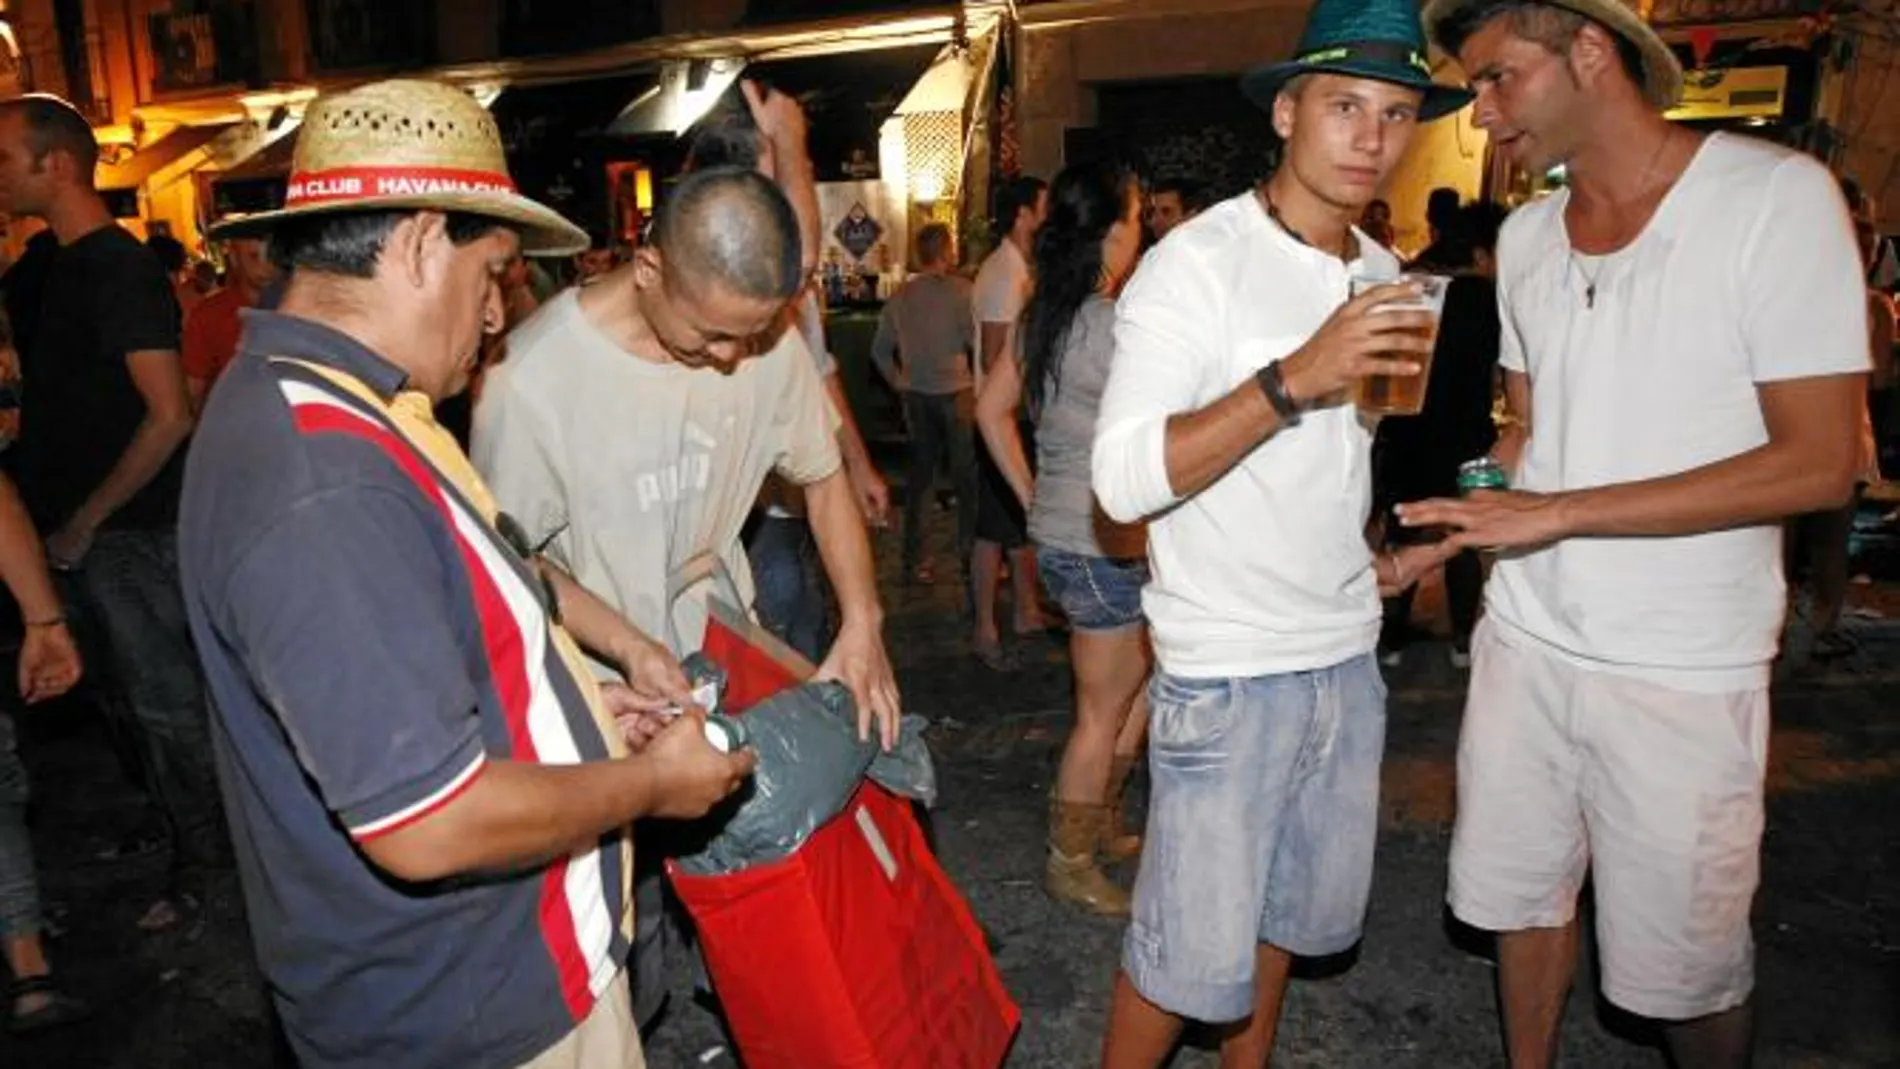 Los bajos precios de las bebidas de los vendedores ambulantes han «roto» el mercado en la zona de La Latina, según denuncian los dueños de los bares